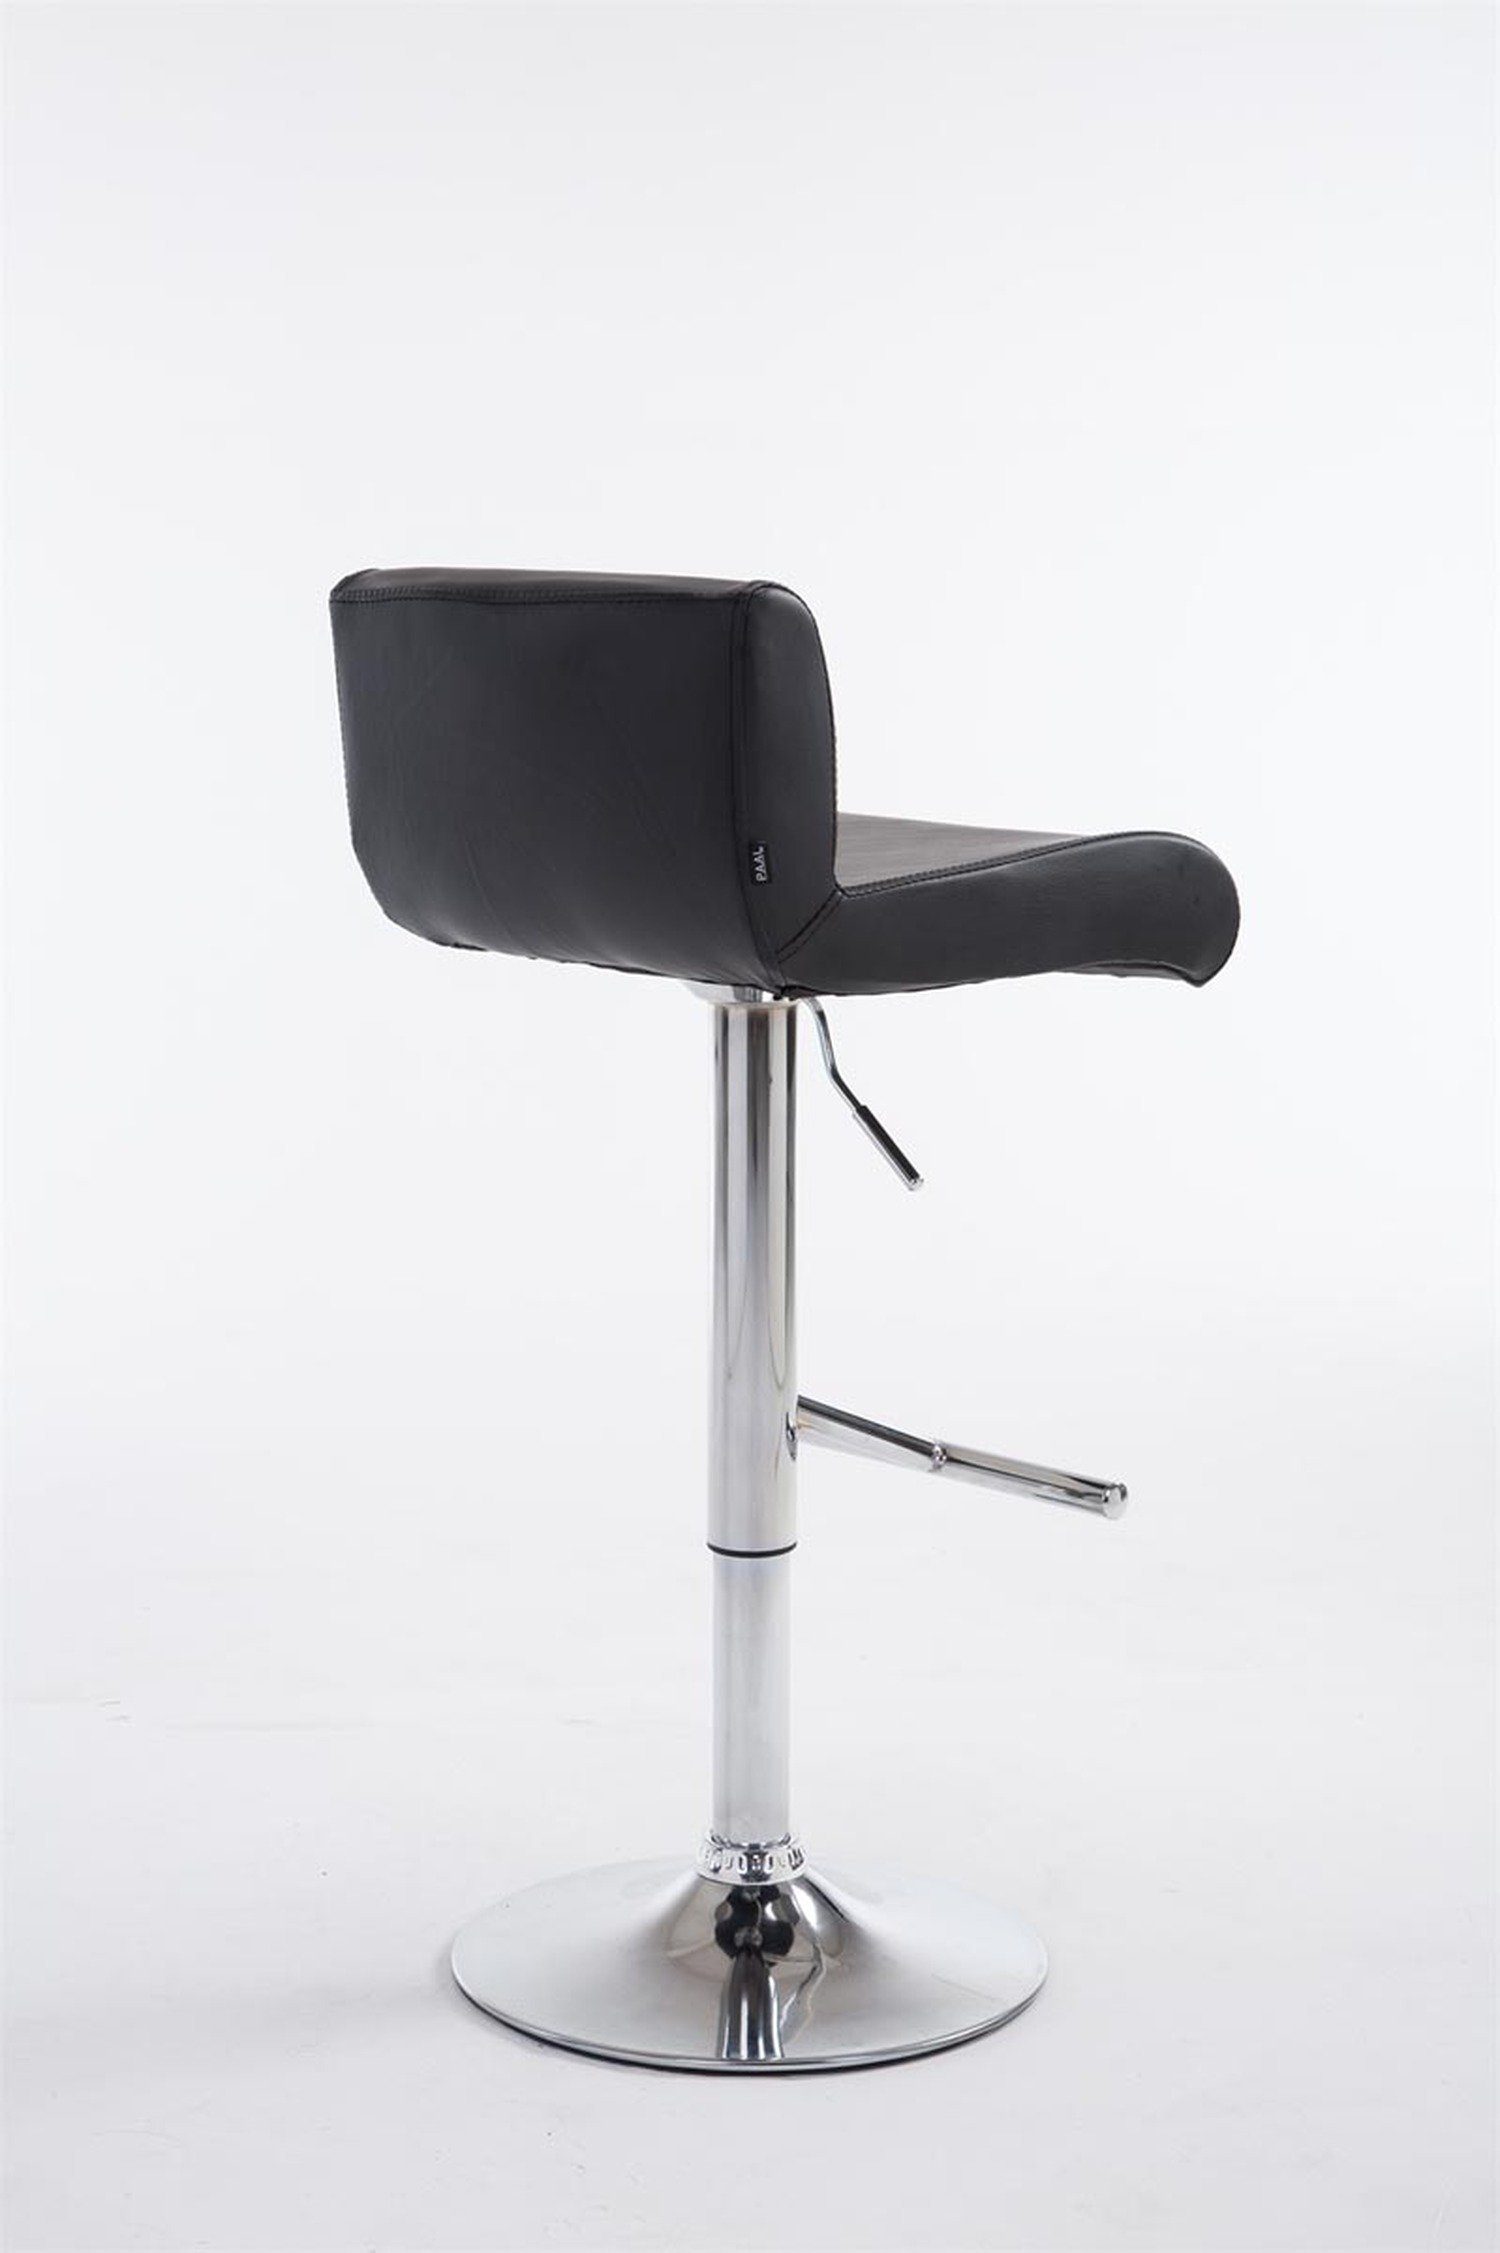 & TPFLiving Barhocker Kunstleder Schwarz Stahl - Calif (Barstuhl höhenverstellbar chromfarbener Tresenhocker), - Theke - 360° für drehbar Hocker - Küche Sitzfläche: